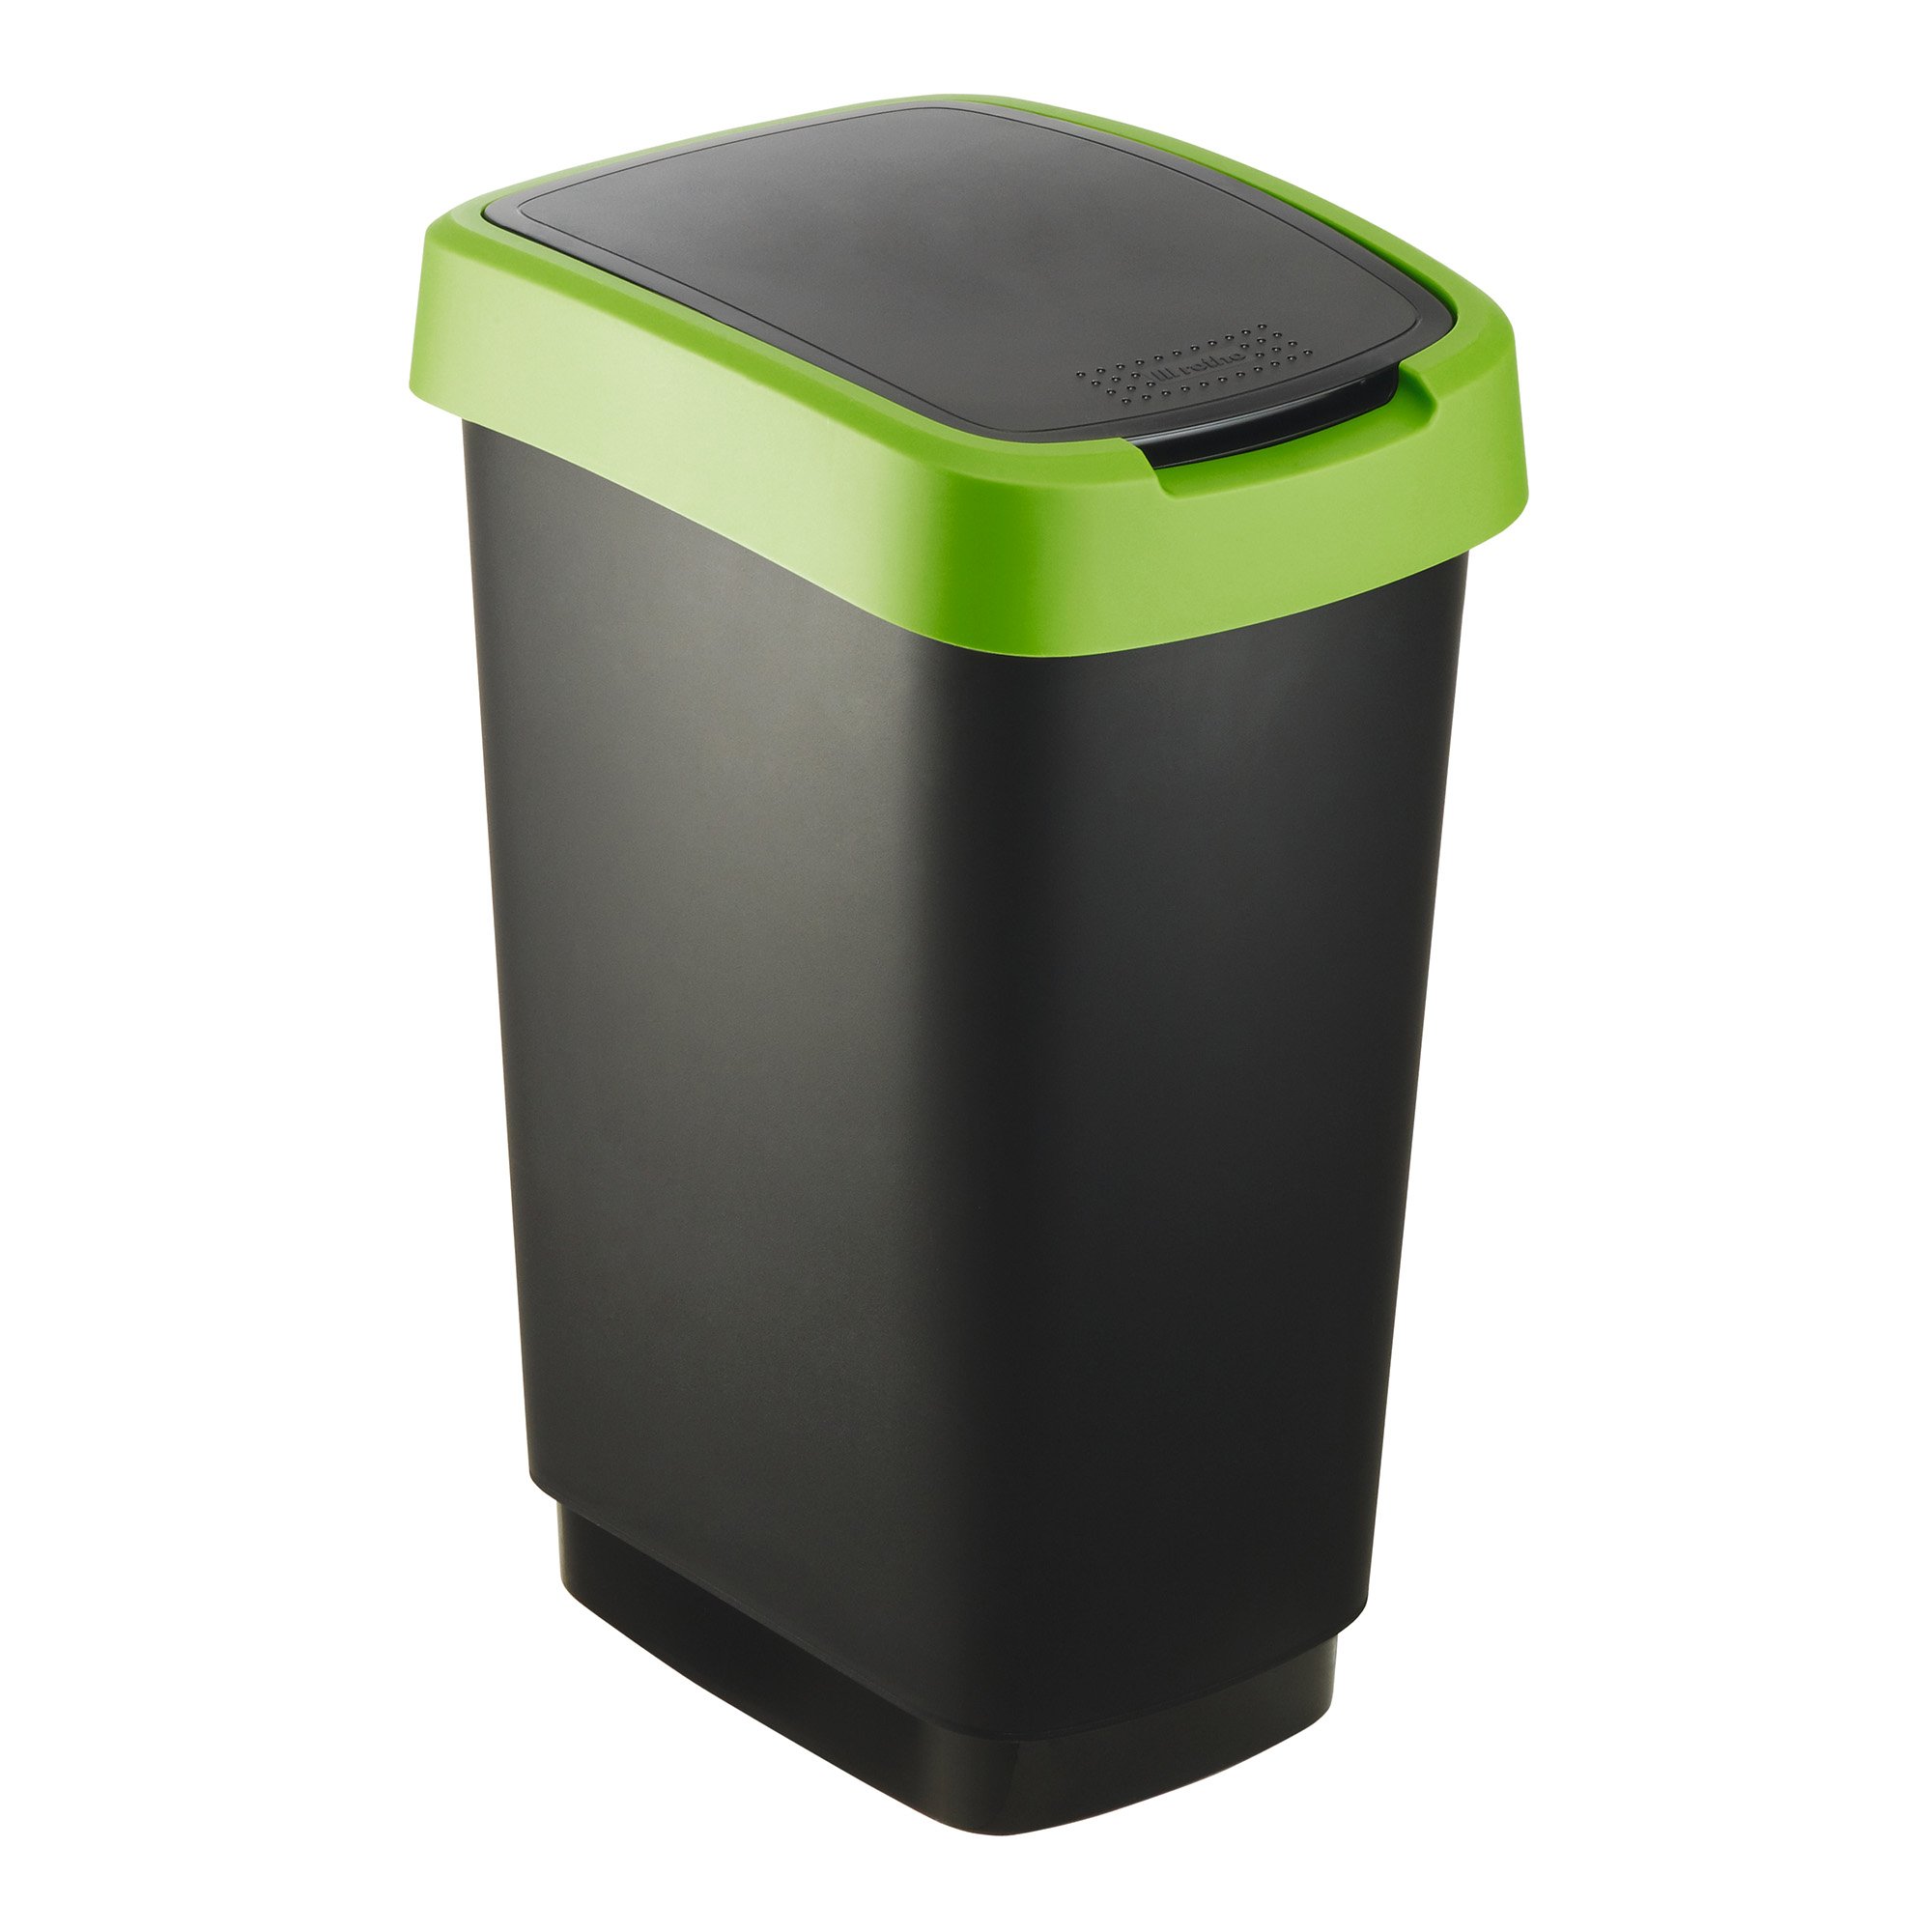 RothoPro Twist Abfallbehälter 25 Liter schwarz/grün 59135414_1